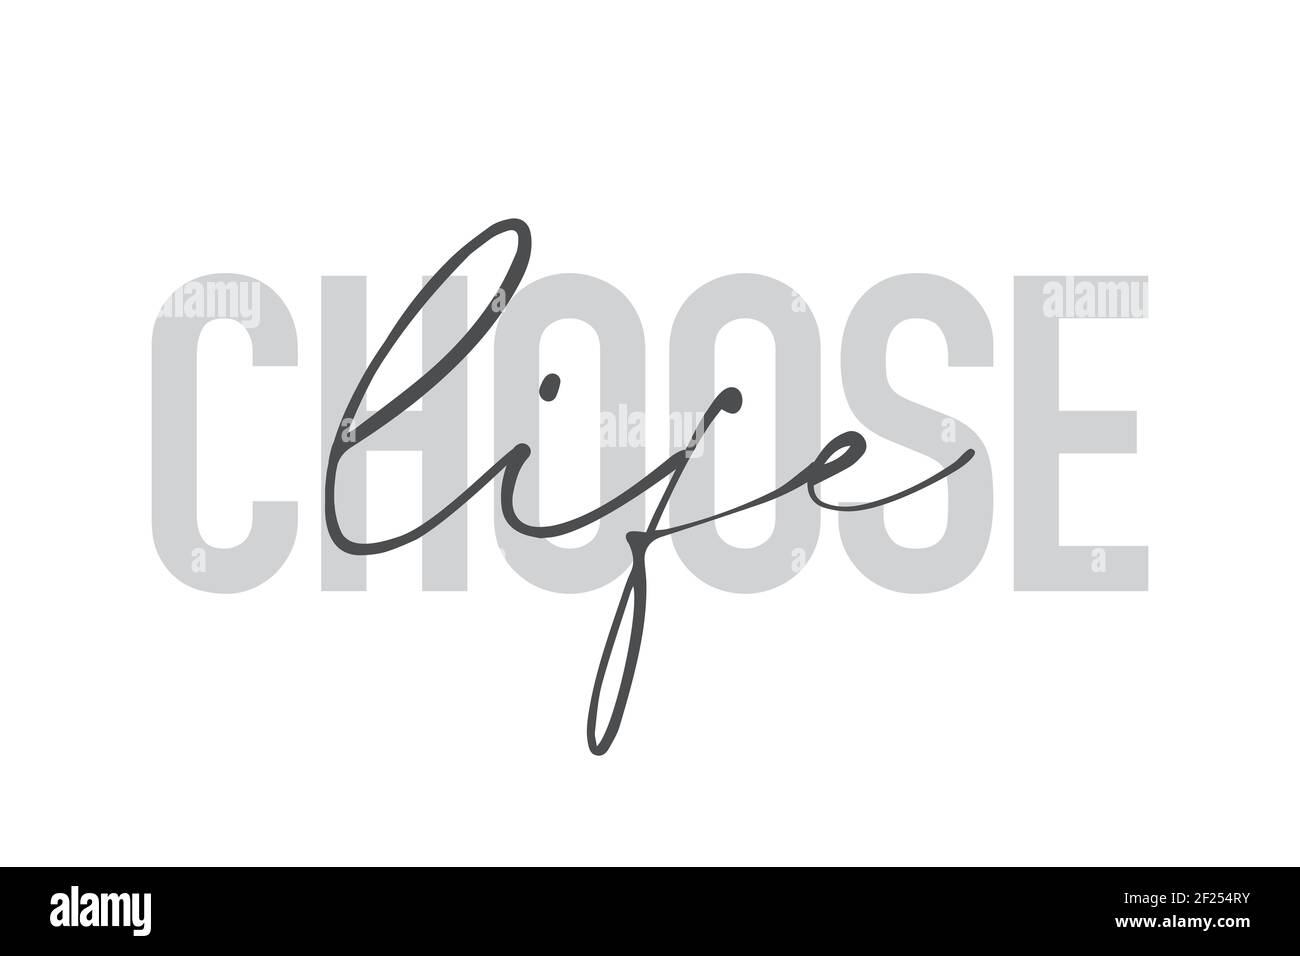 Modernes, urbanes, schlichtes Grafikdesign eines Sprichwort "Choose Life" in grauen Farben. Trendige, coole, handgeschriebene Typografie Stockfoto